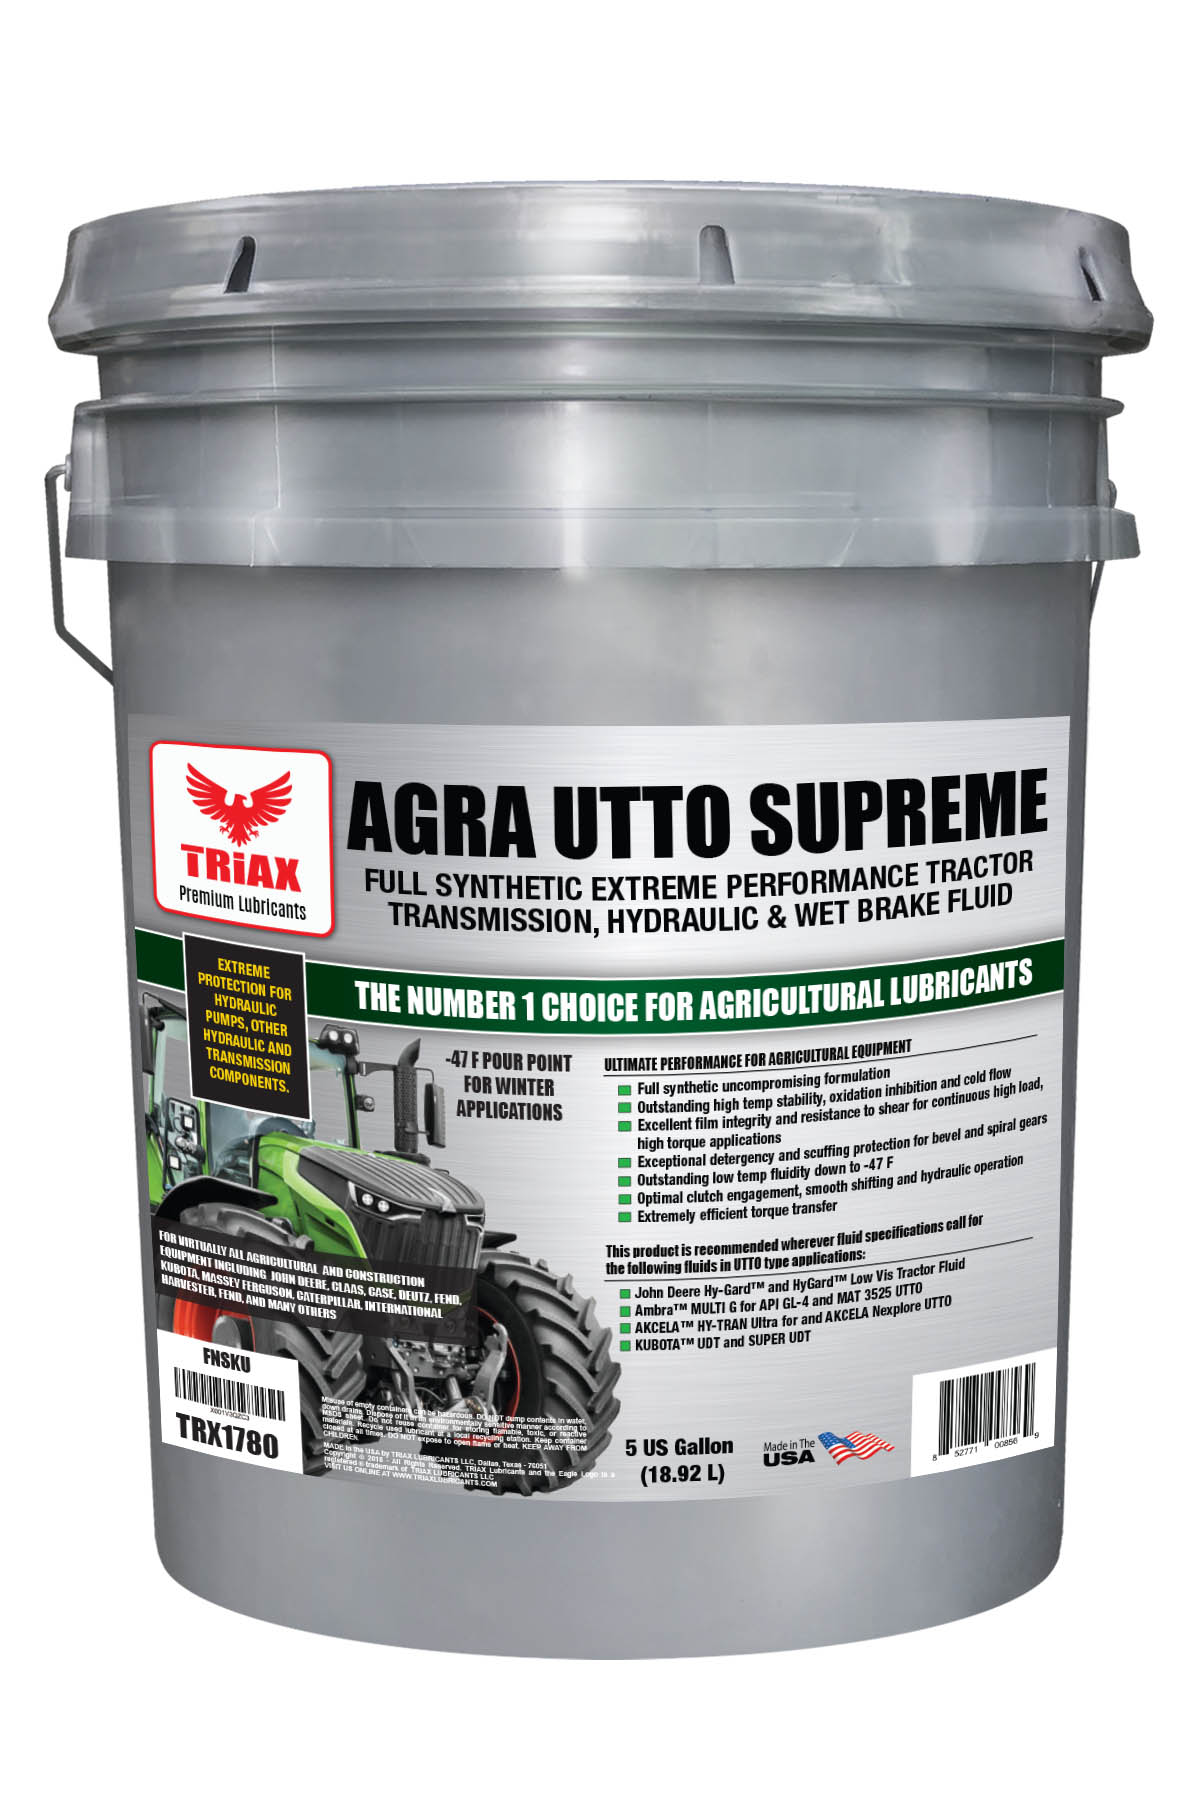 TRIAX Agra UTTO Supreme Tractor Hydraulic Oil